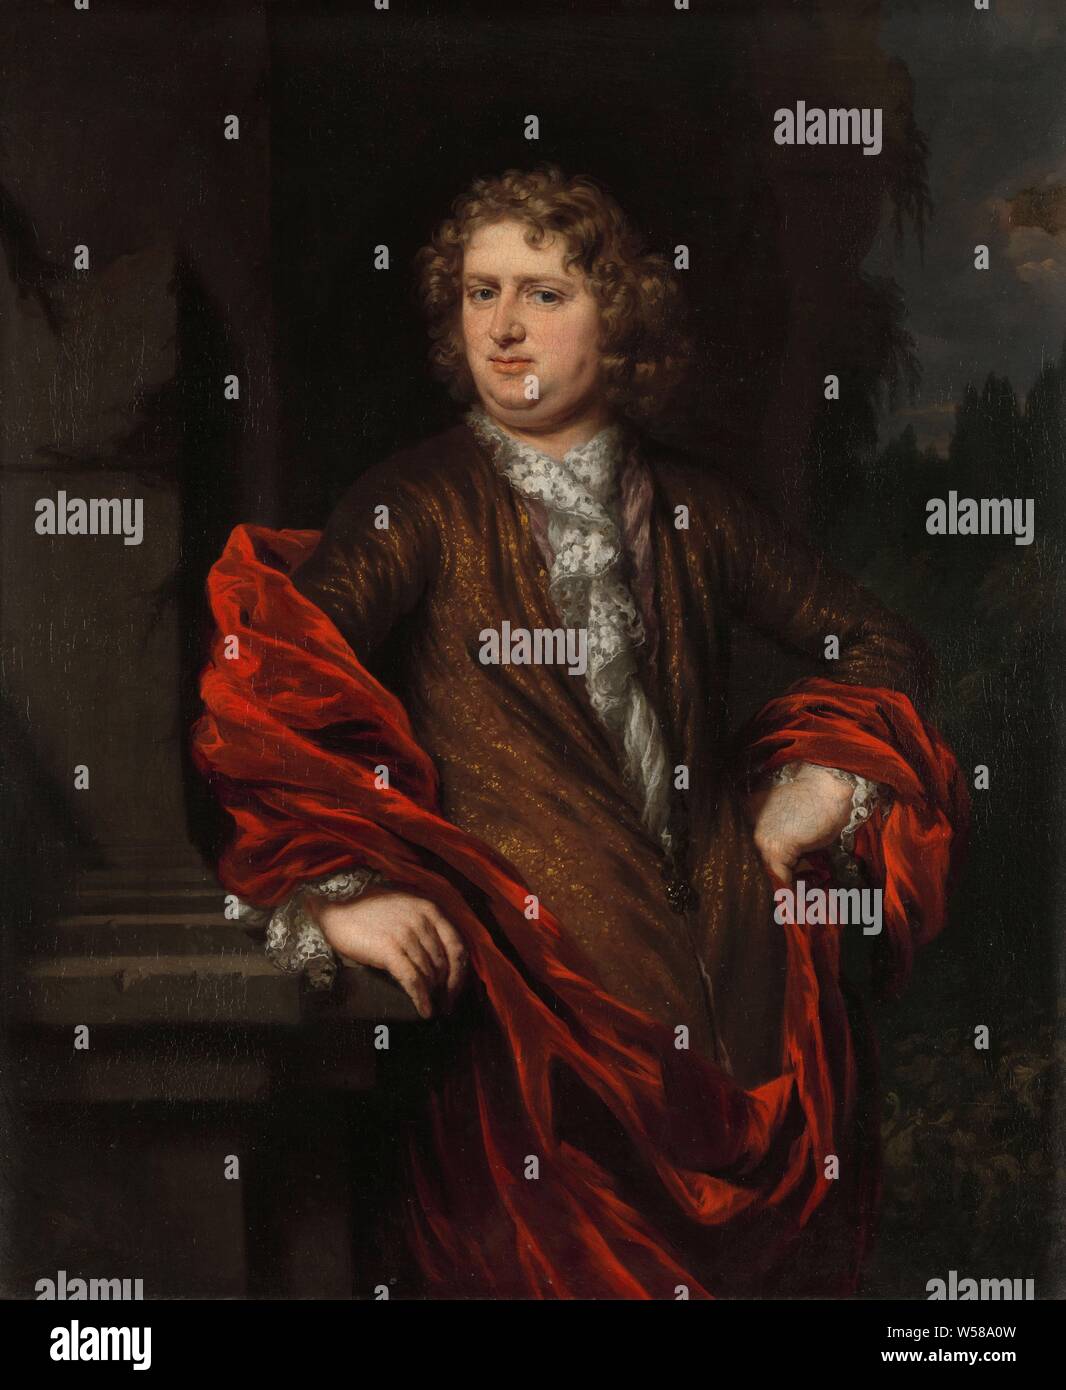 Portrait de Pieter Groenendijk Portrait de Pieter Groenendijk, Portrait de Pieter Groenendijk (-1731), secrétaire de la quarantaine. Elle épouse Petronella Dunois en 1677. Genou. La personne représentée est vêtue d'une veste marron avec une chemise de dentelle blanche et un manteau rouge. Il est appuyé contre une colonne à demi-hauteur dans un paysage. Pieter van Groenendijck, Nicolaes MAES, 1677 - 1685, la peinture à l'huile (peinture), toile, h 69,2 cm × w 57,8 cm × 8,5 cm d Banque D'Images